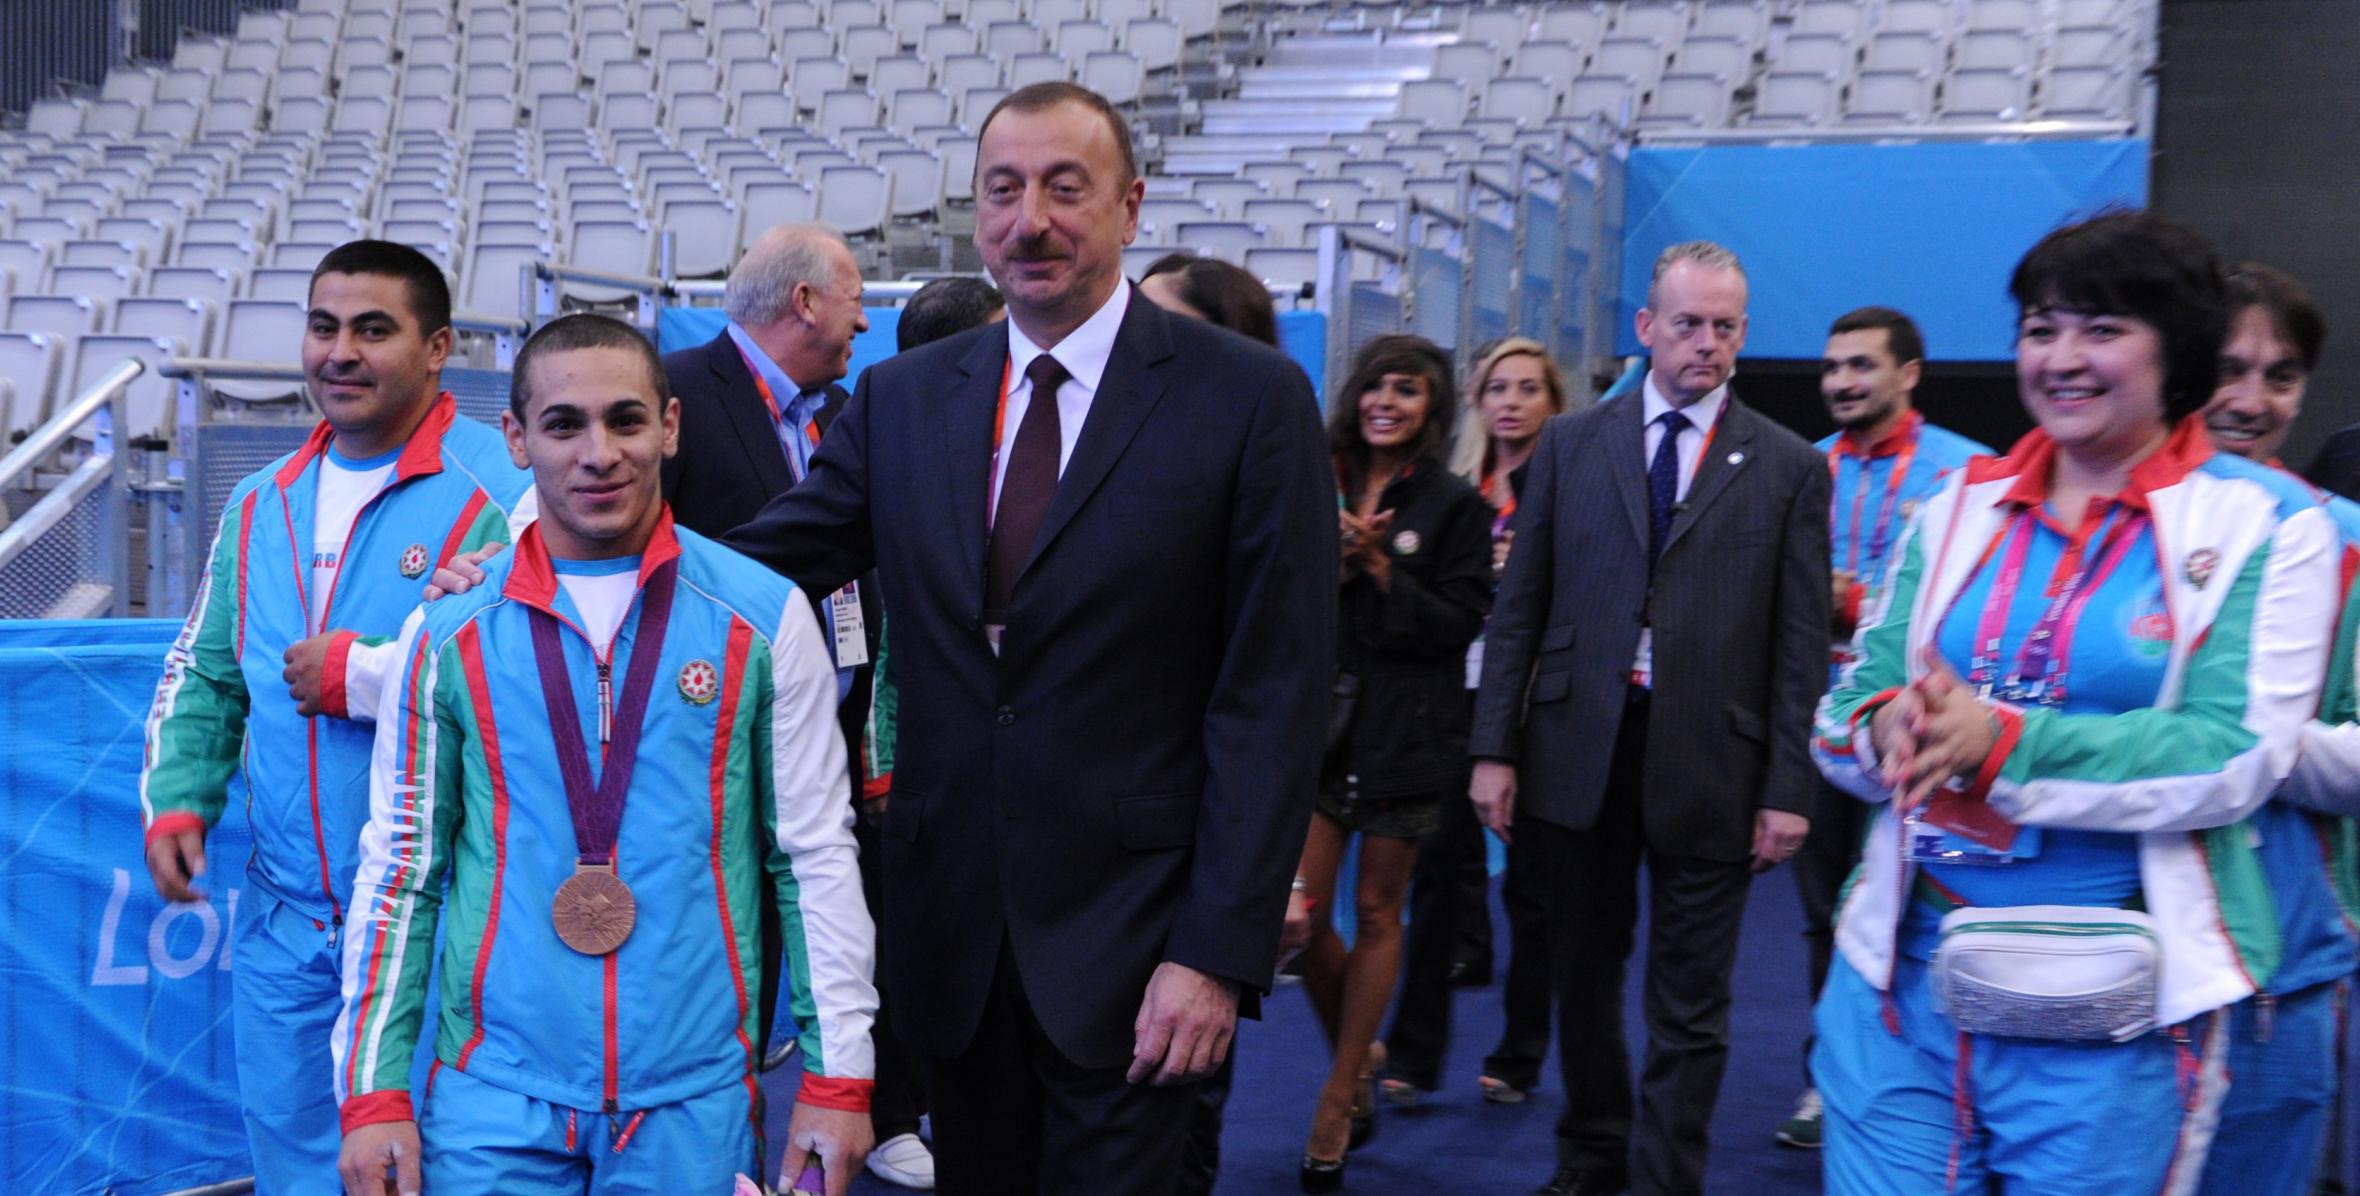 İlham Əliyev London Olimpiadasında ölkəmizə ilk medal qazandıran ağır atletimizin yarışına baxmışdır